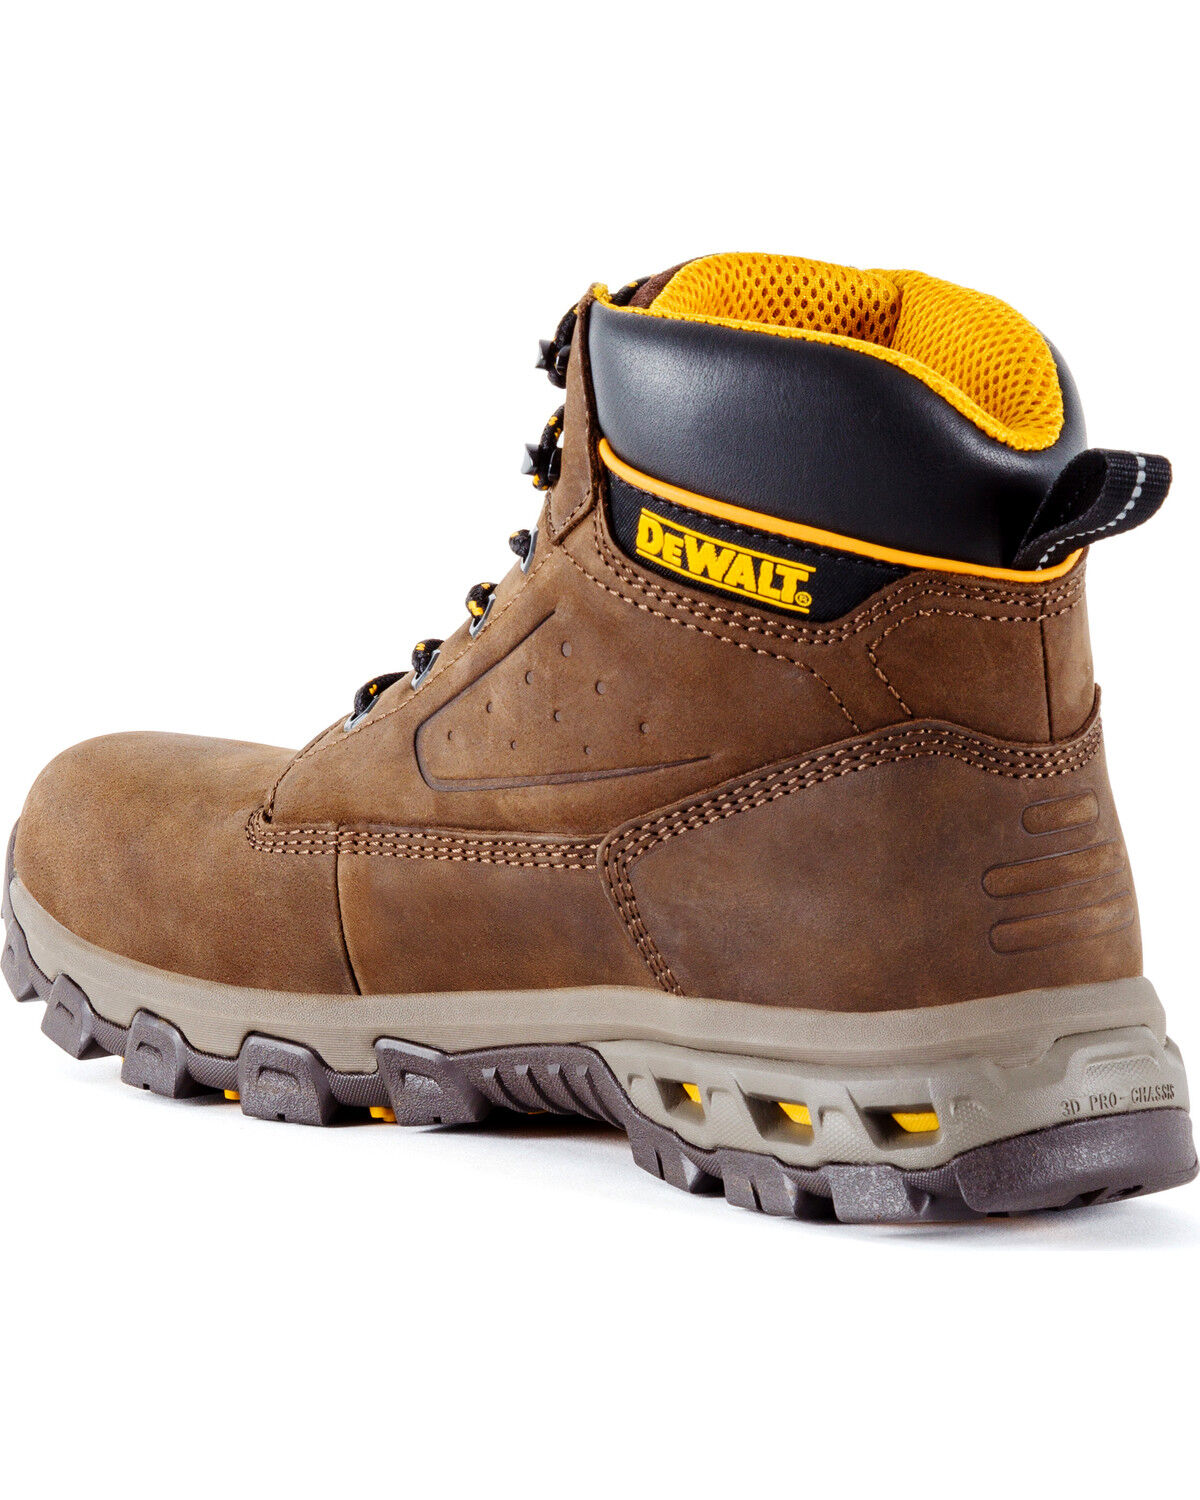 DeWalt Men's Halogen Work Boots 